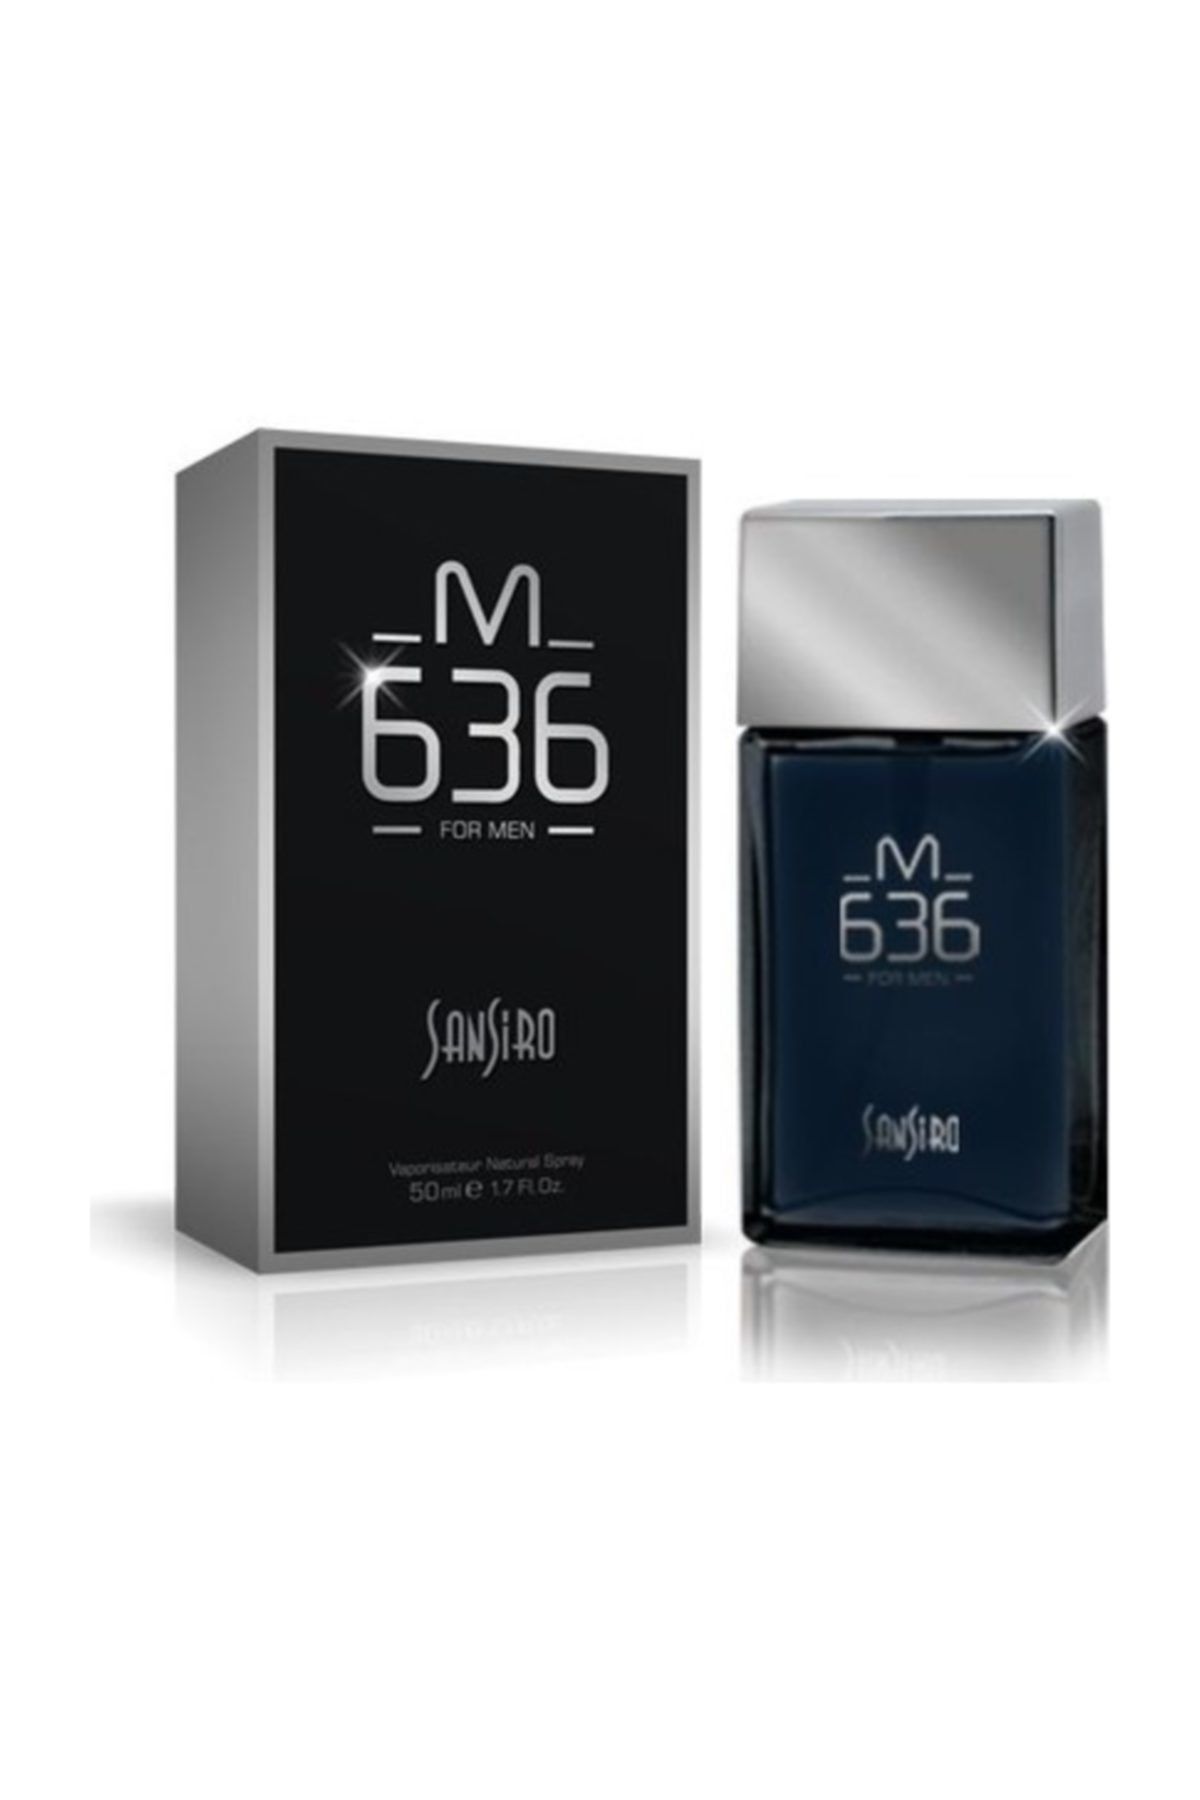 Sansiro M-636 Erkek Parfüm 100 ml Edp